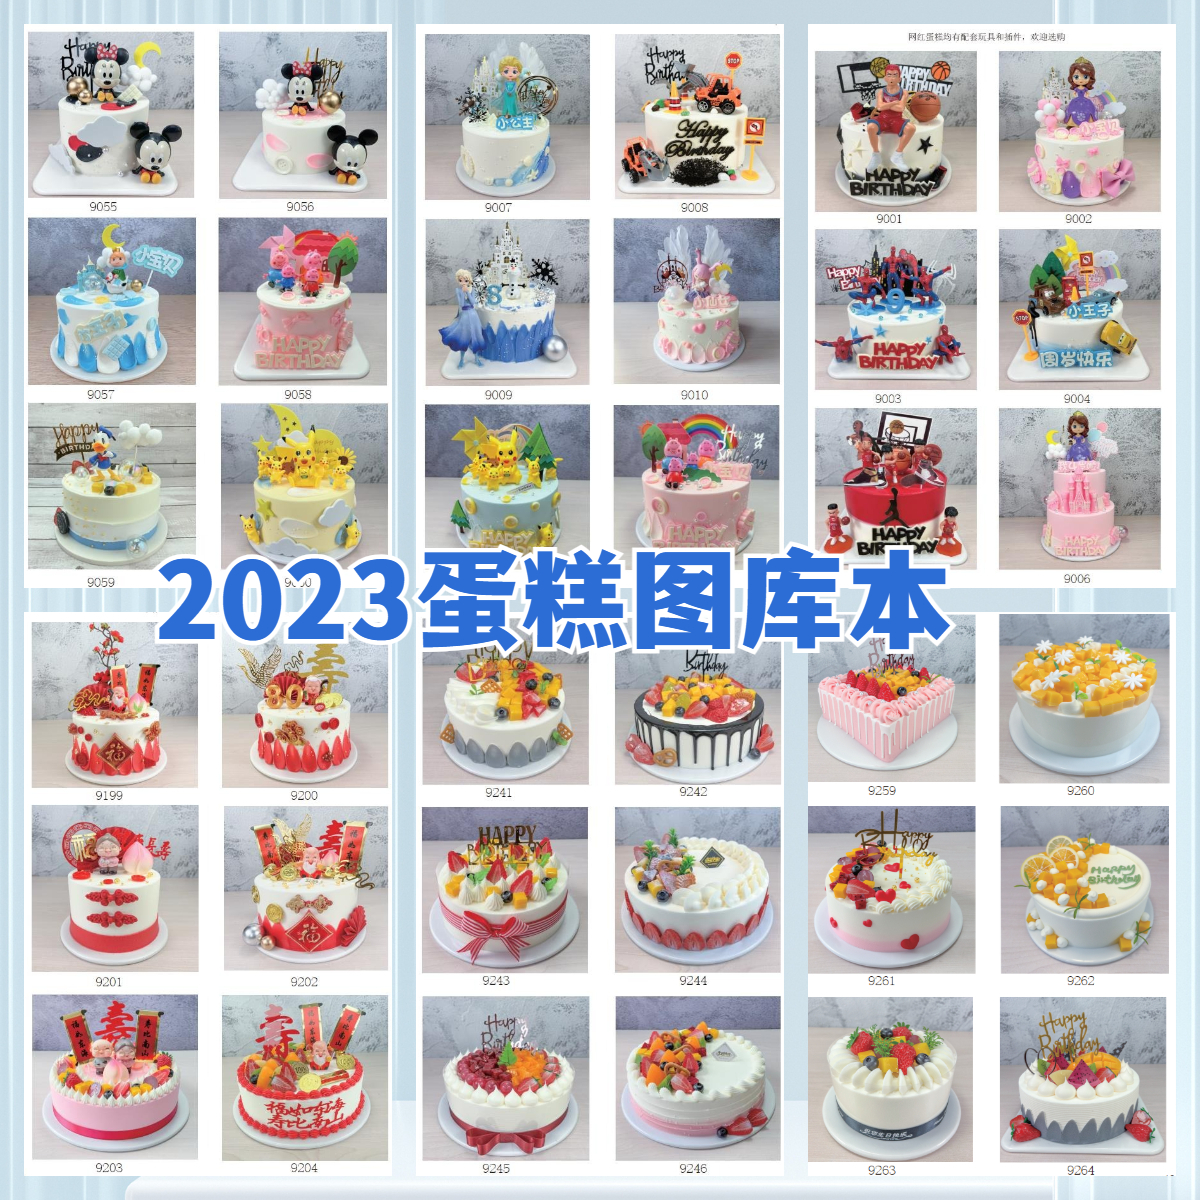 宏艺蛋糕模型图库本2023网红卡通水果祝寿高清大图清晰印成品